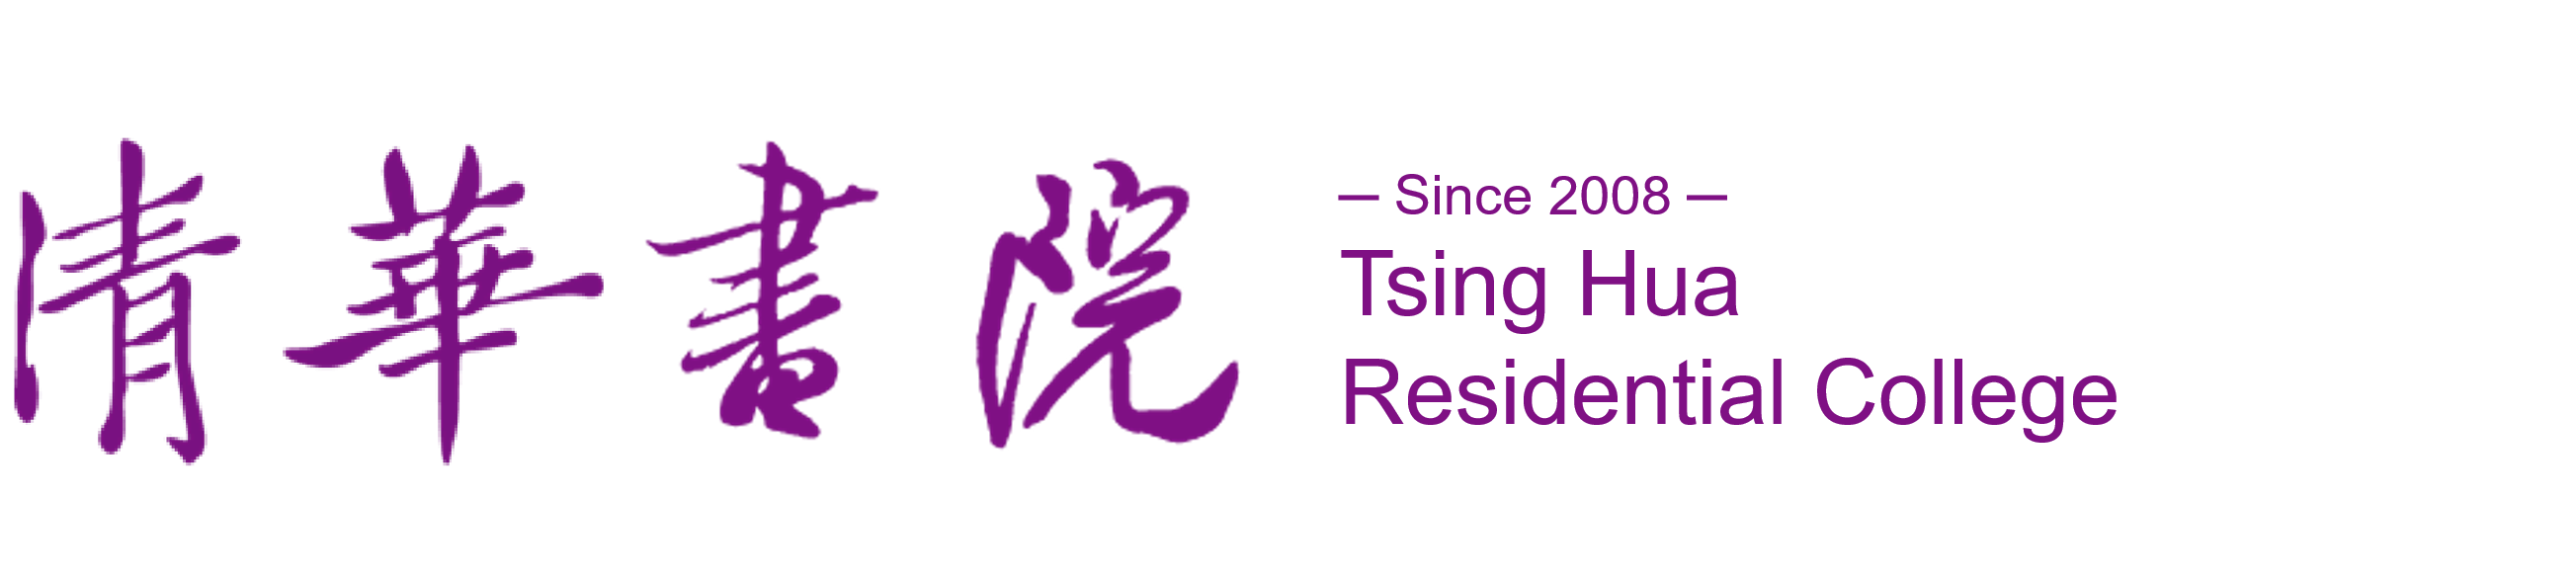 Tsing Hua Residential College